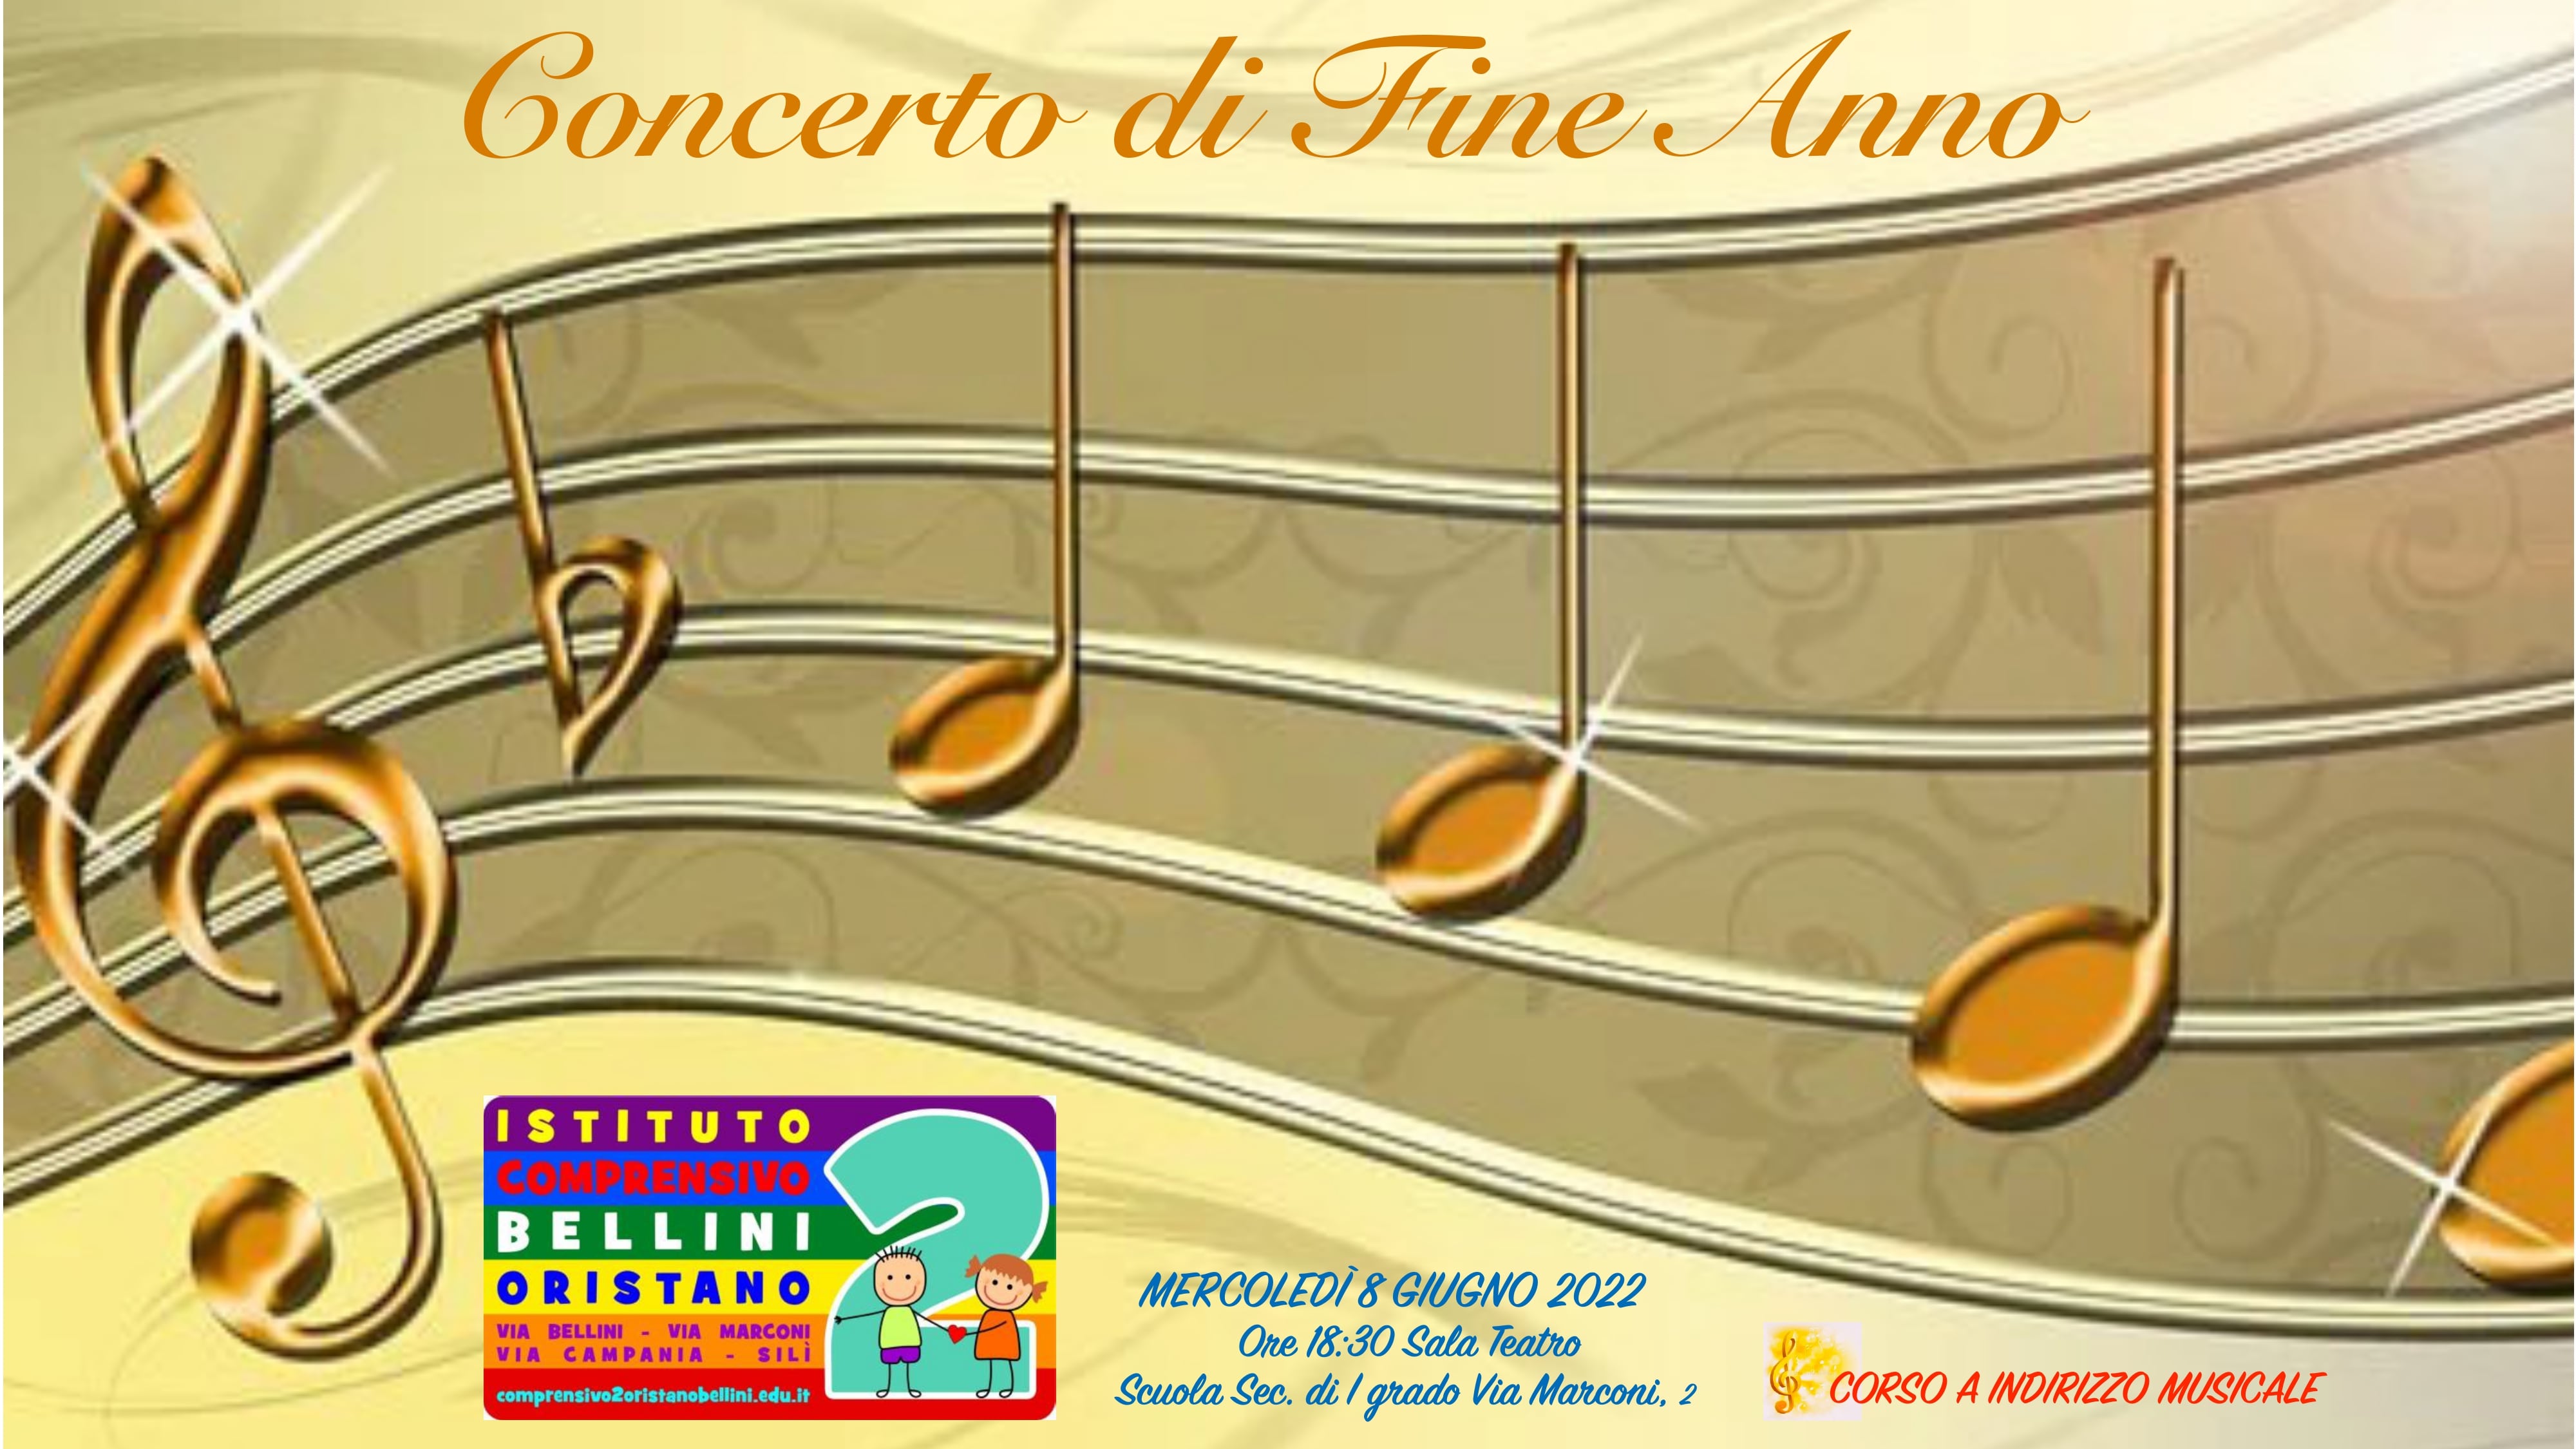 Locandina Concerto di fine anno 2022 page 0001 min